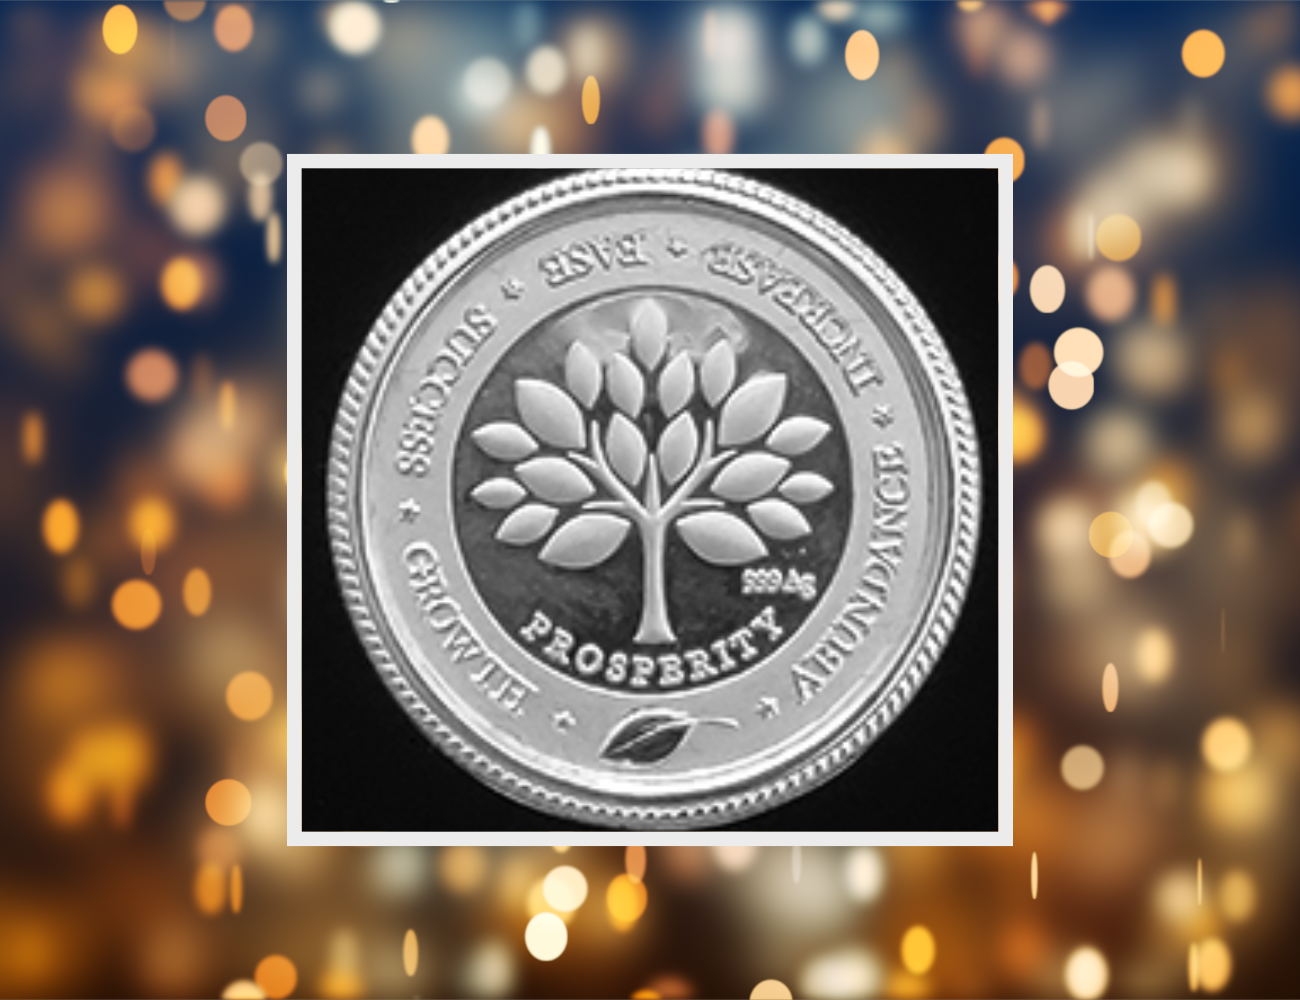 Prosperity Silver Coin